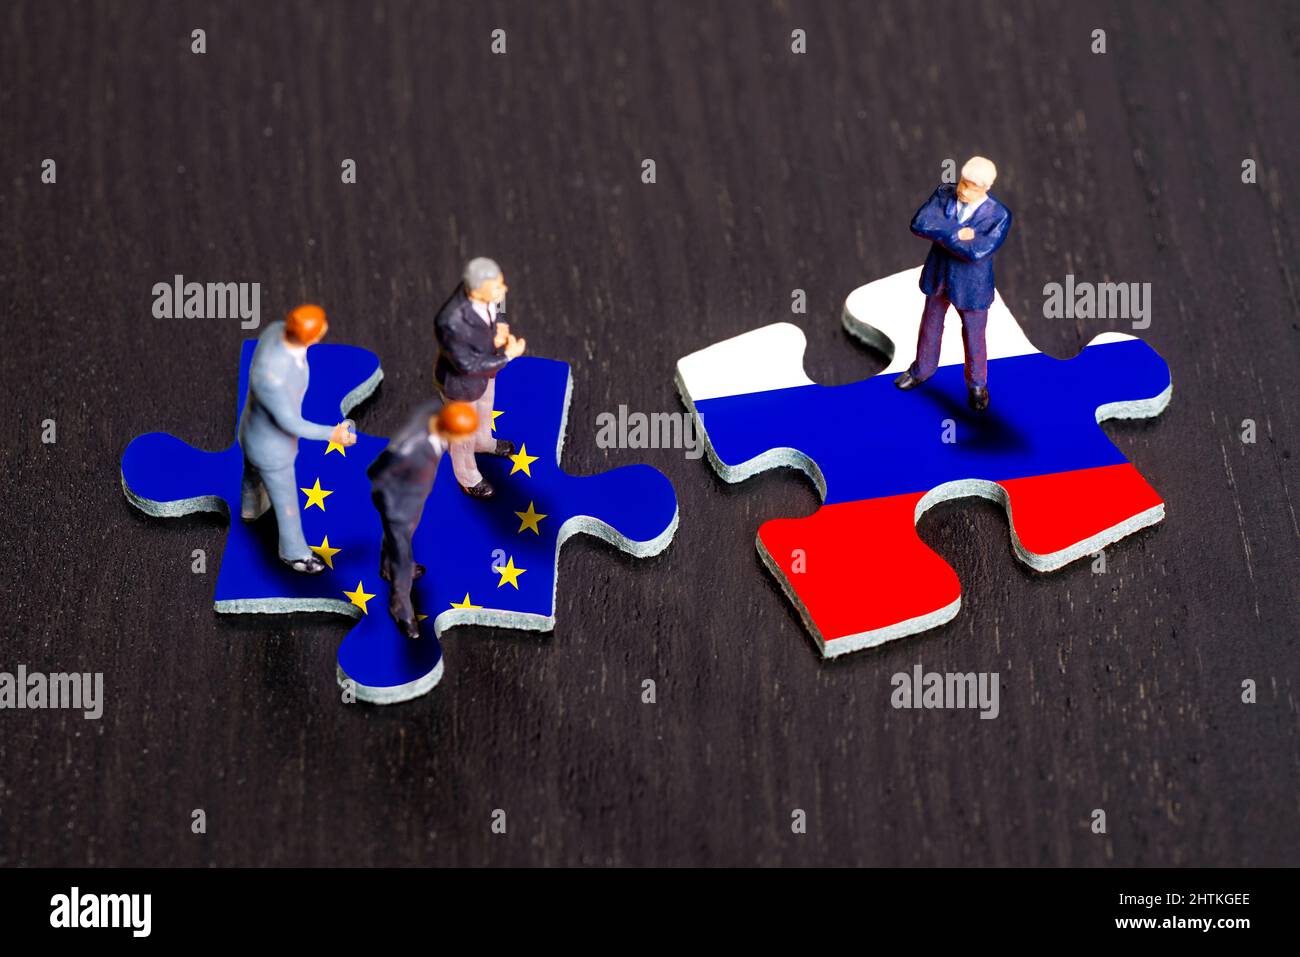 Piezas de rompecabezas con las banderas de Europa y Rusia Foto de stock